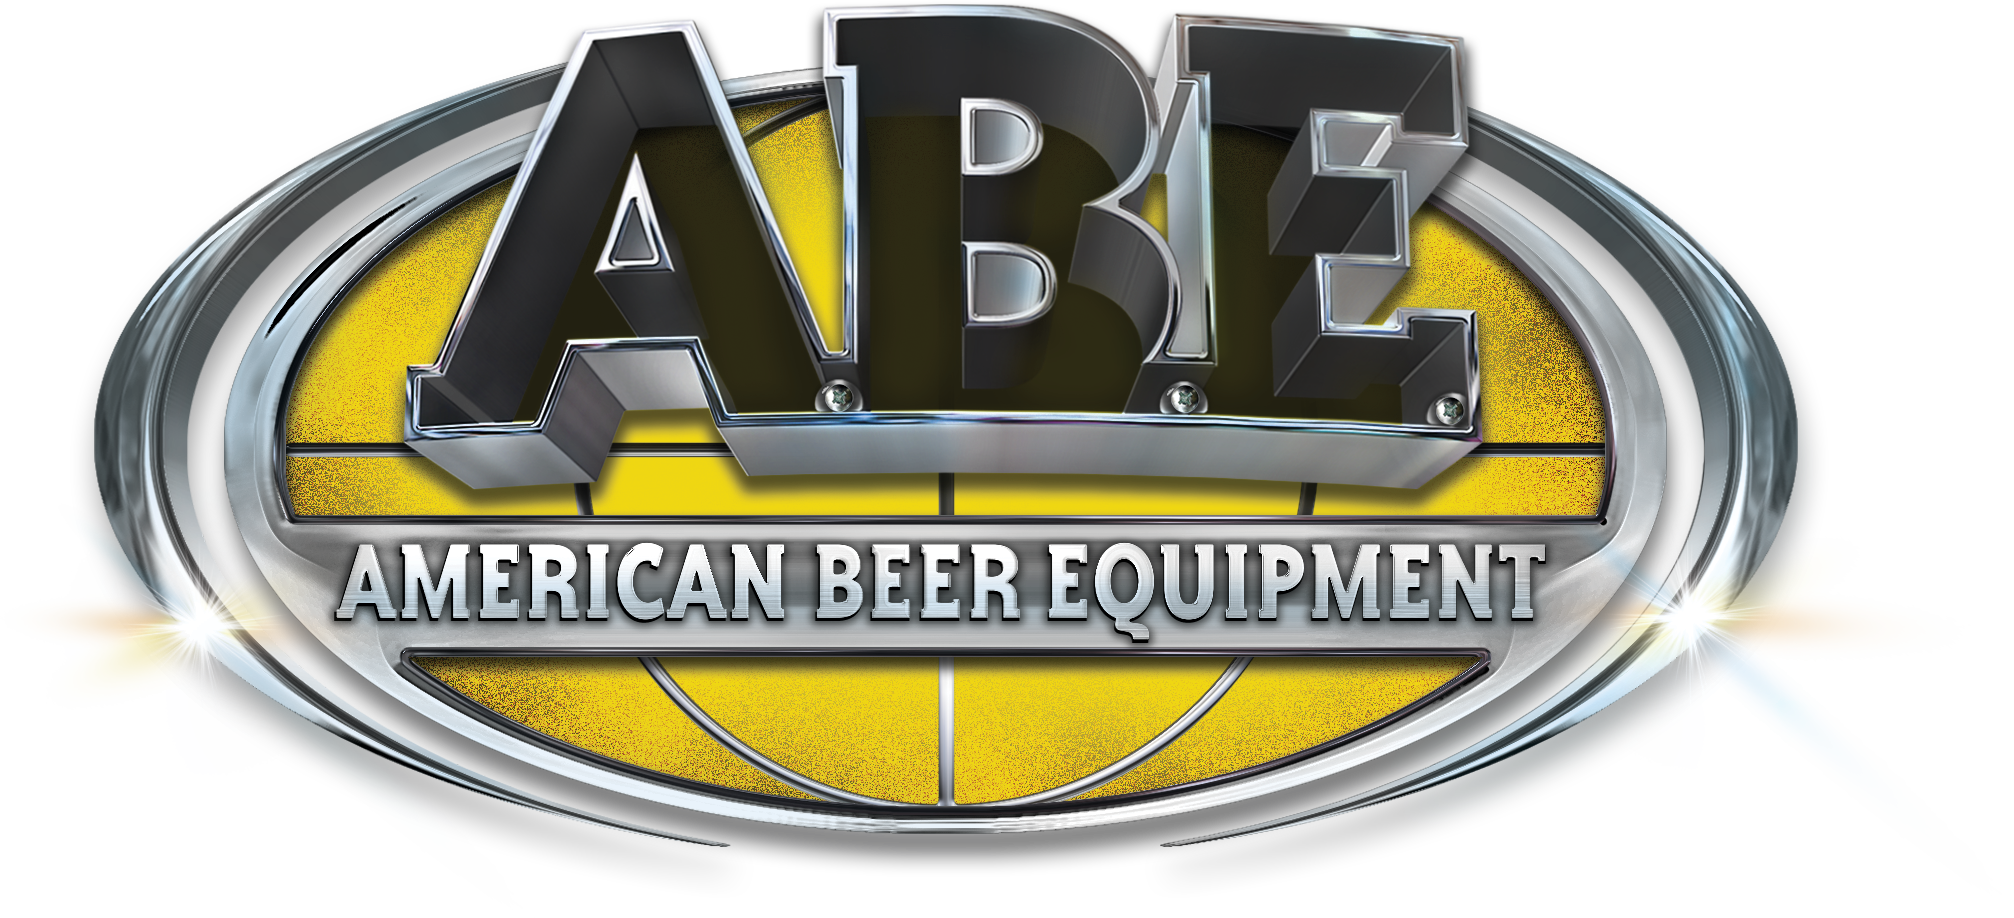 American Beer Equipment